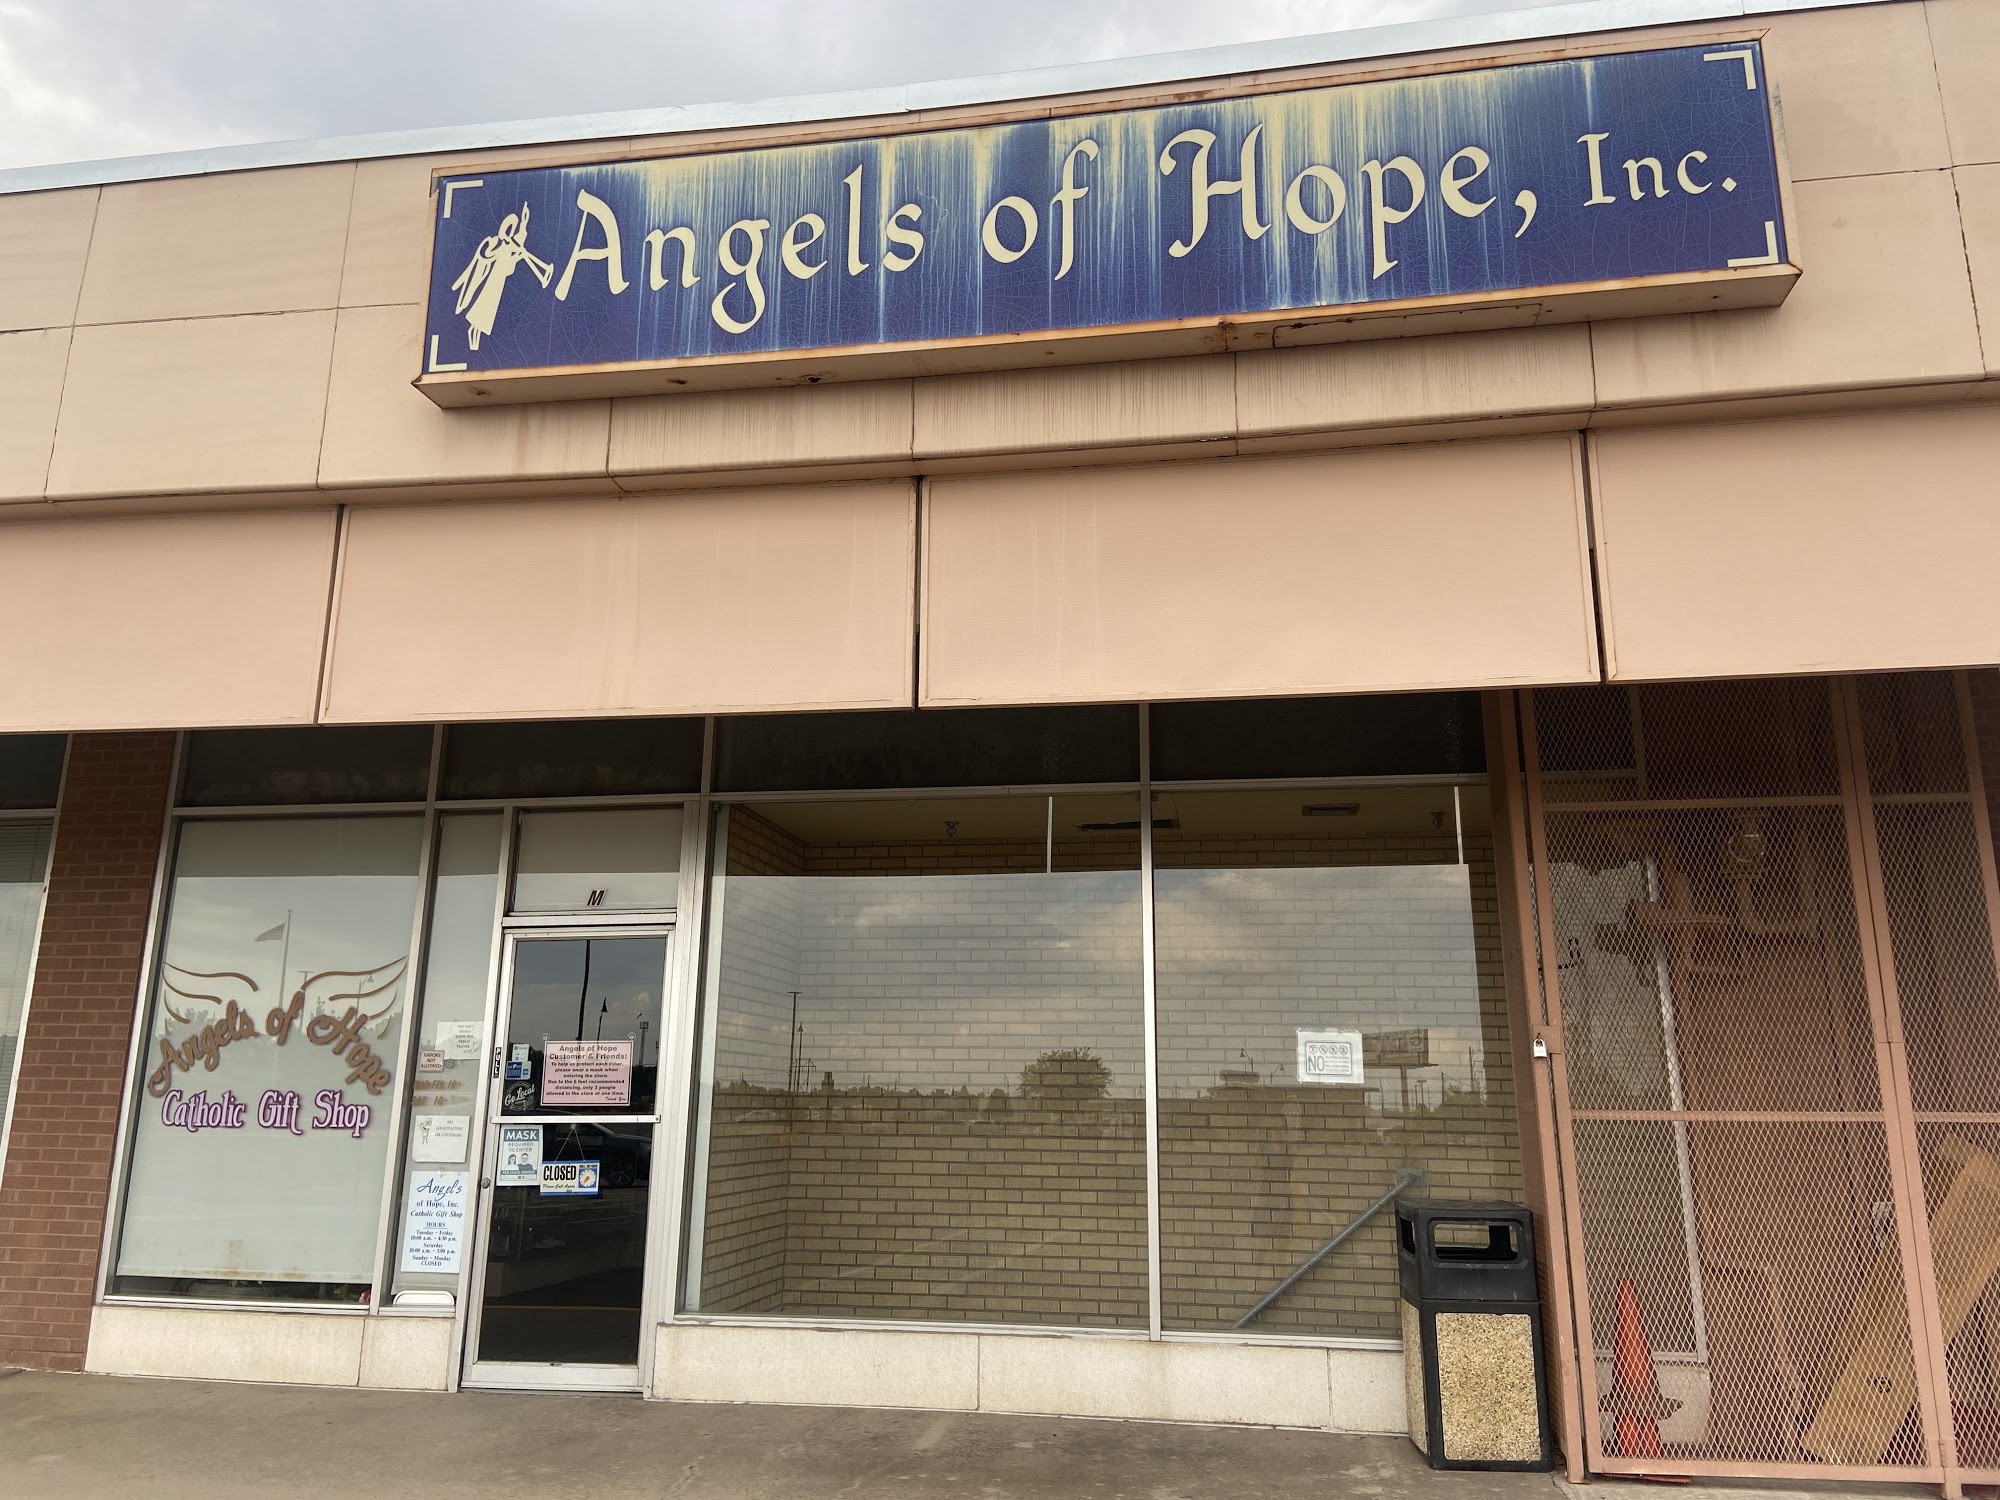 Angels of Hope, Inc: A Catholic Gift Shop